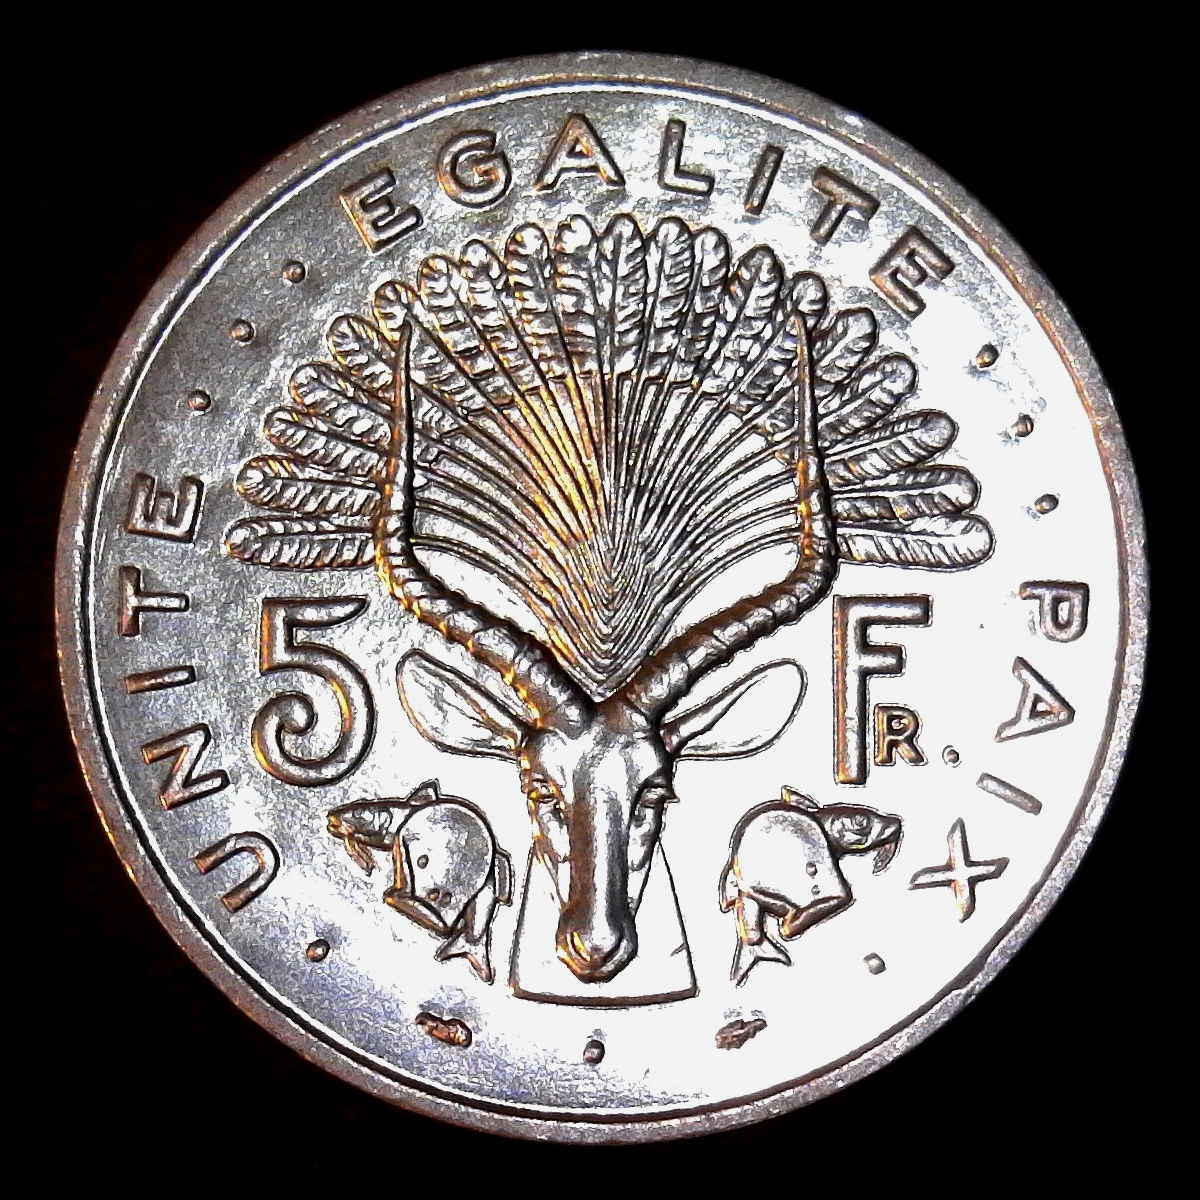 Djibouti 5 Francs 1991 obverse less 5.jpg